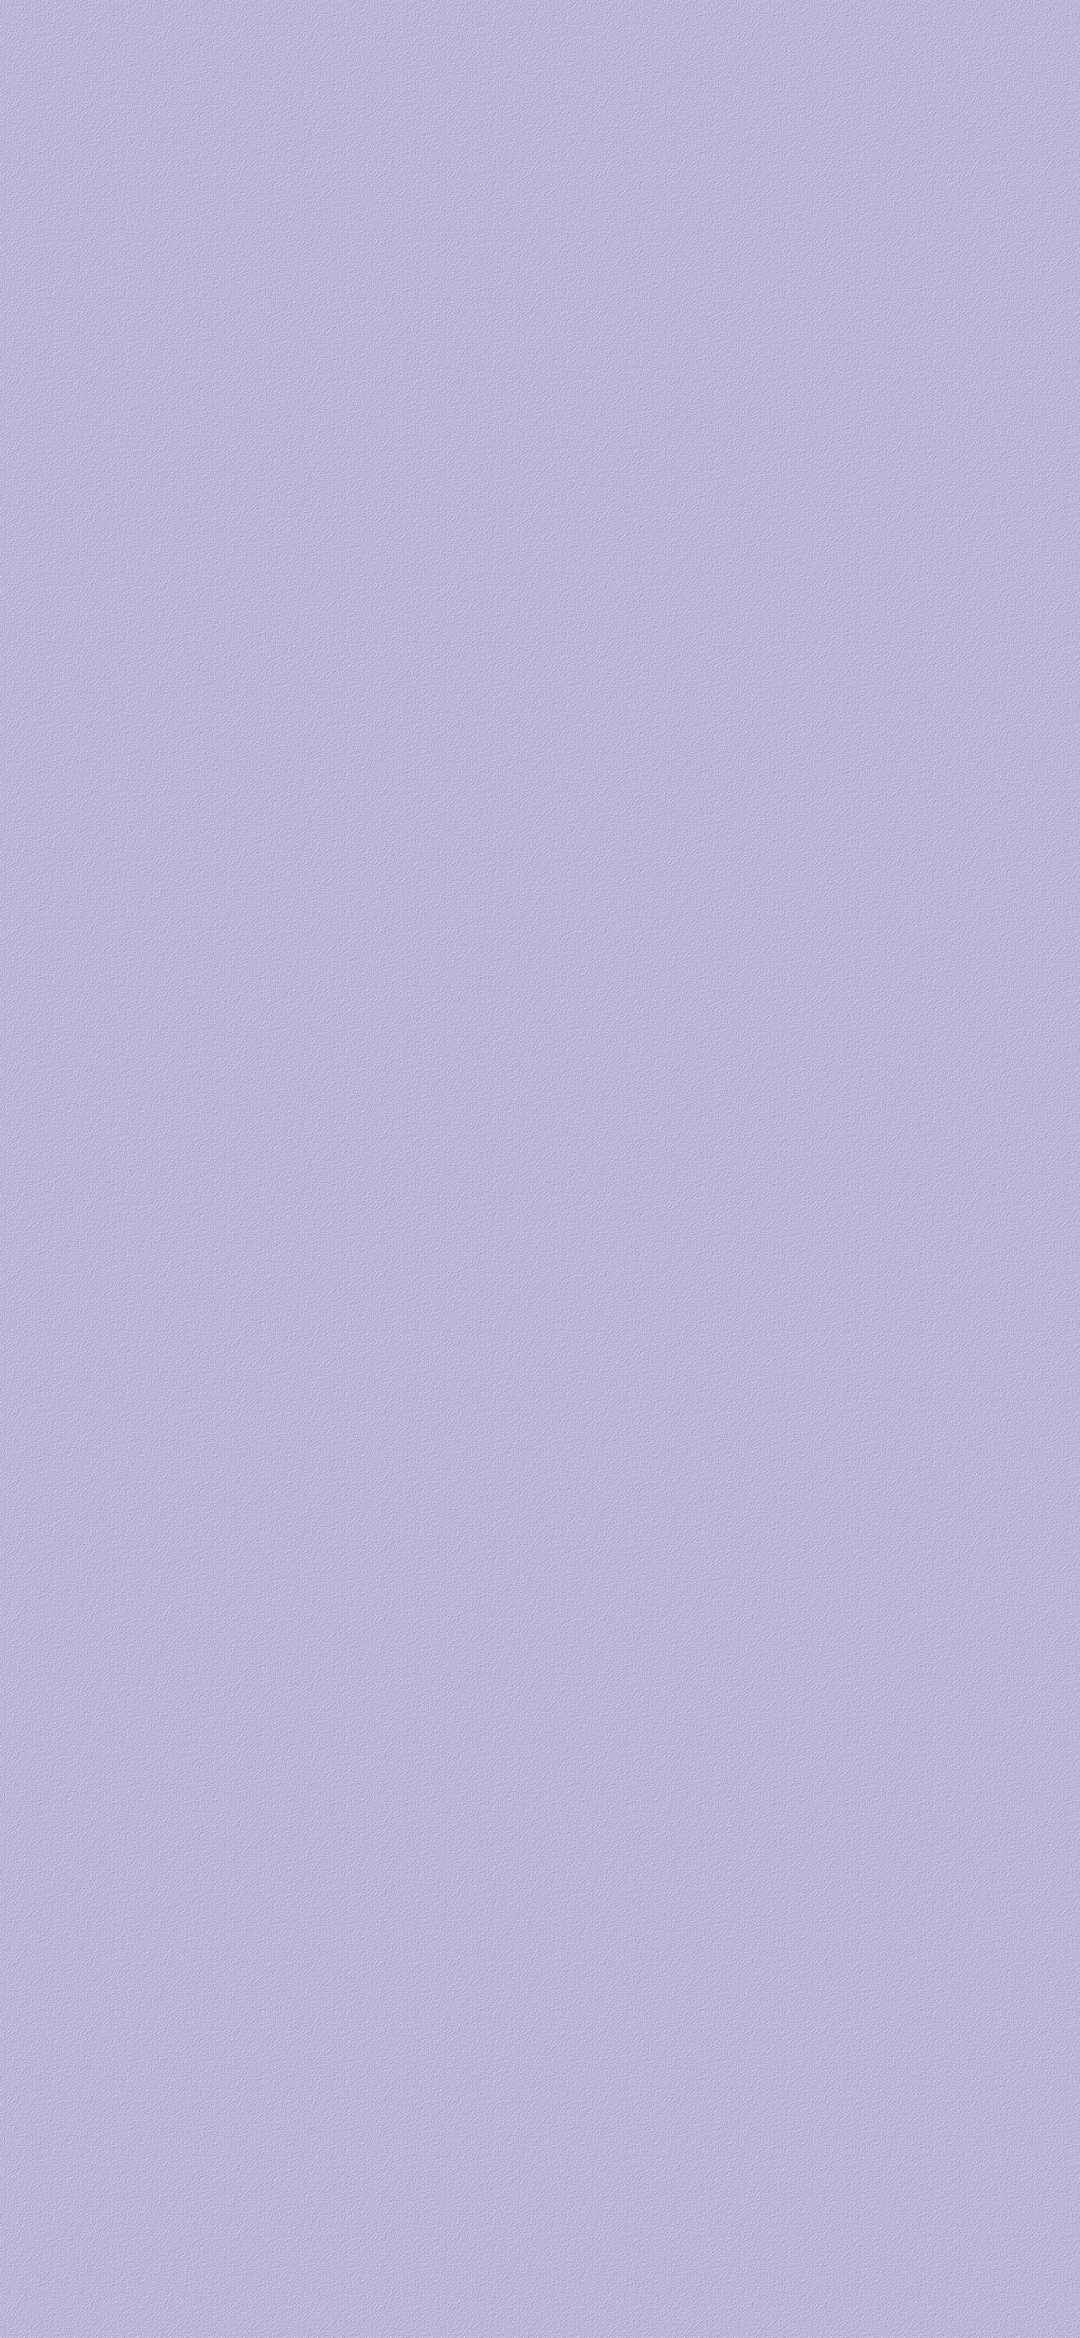 浅紫色纯色磨砂超清壁纸-